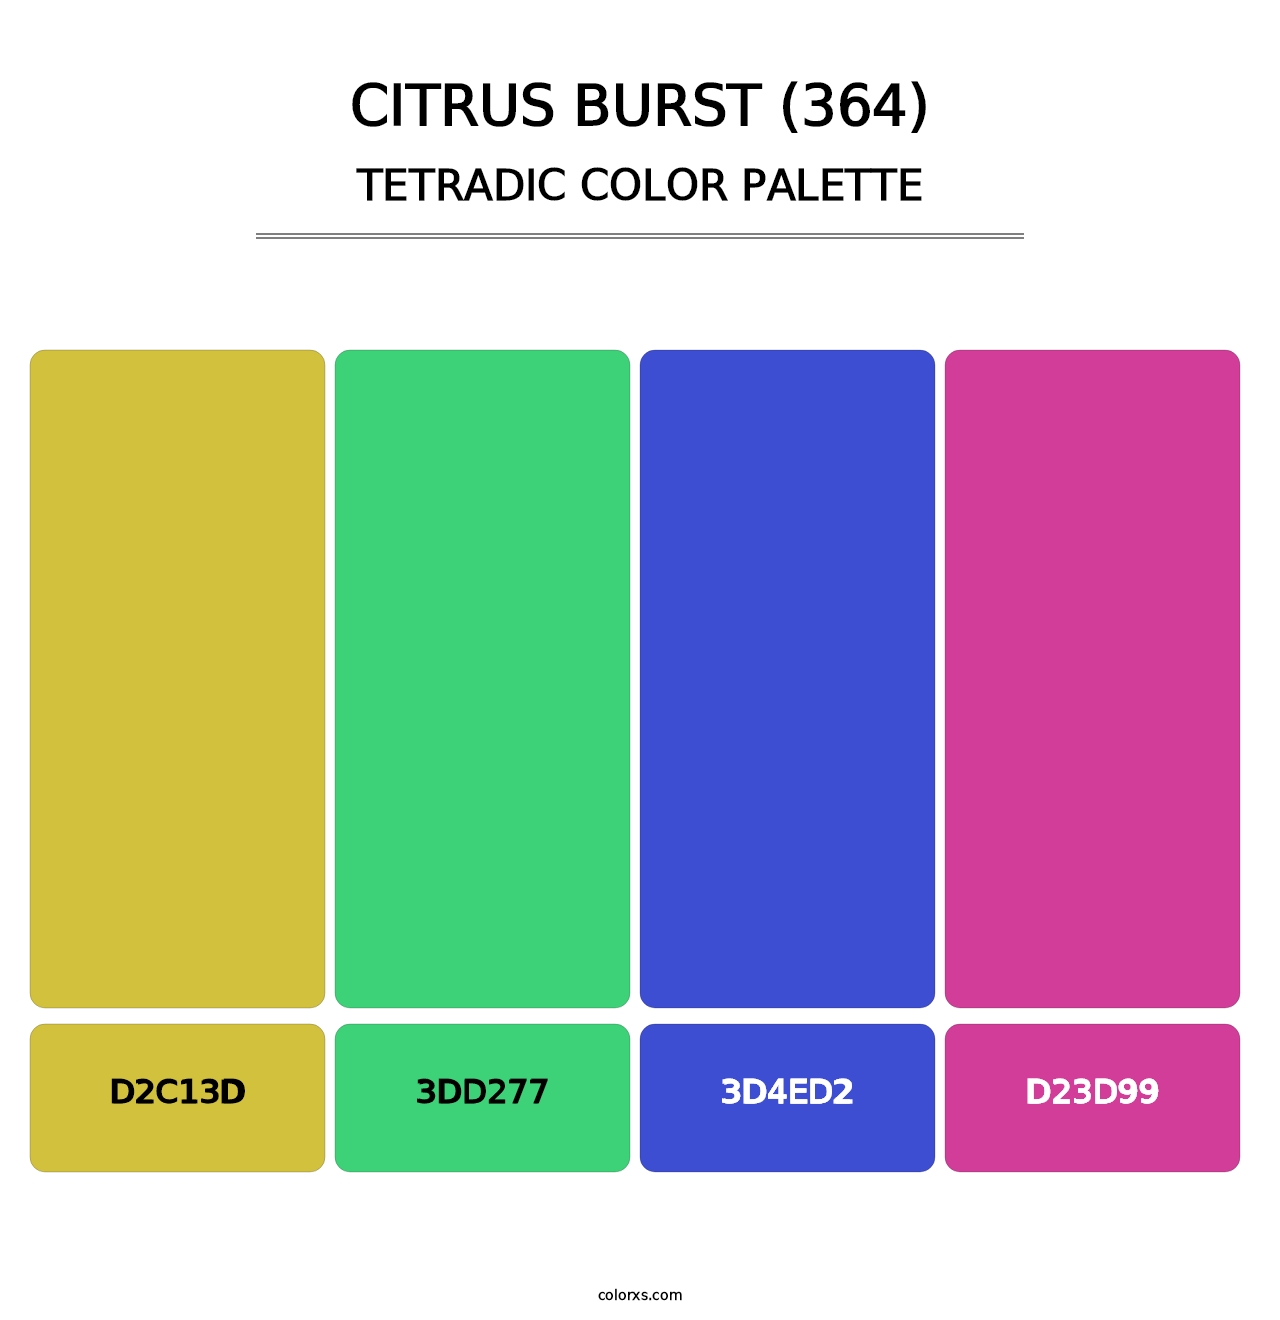 Citrus Burst (364) - Tetradic Color Palette